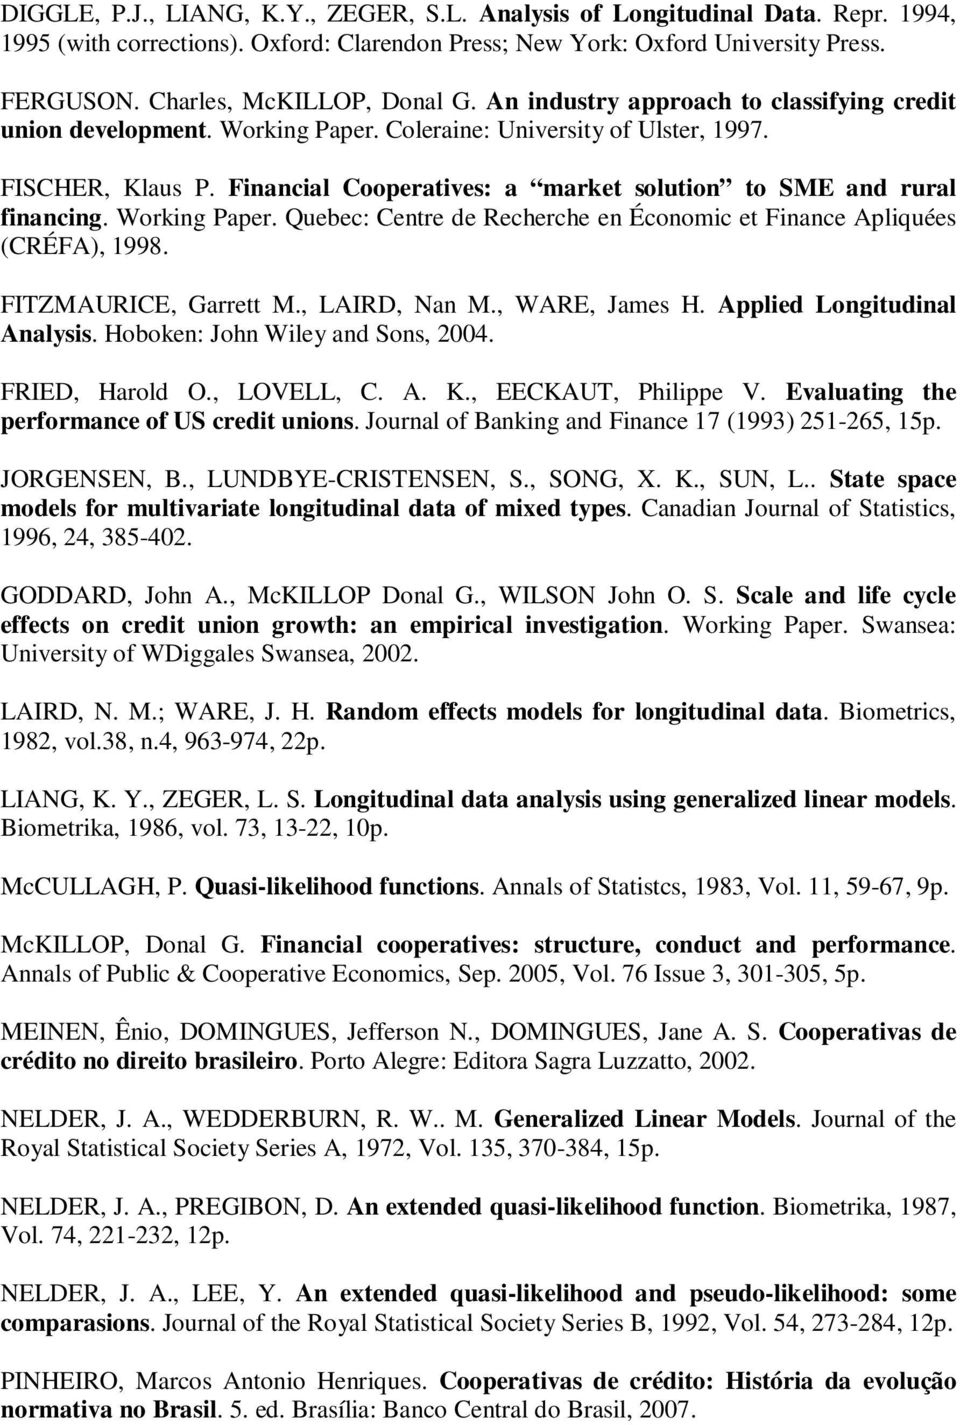 Workng Paper. Quebec: Centre de Recherche en Économc et Fnance Aplquées (CRÉFA), 1998. FITZMAURICE, Garrett M., LAIRD, Nan M., WARE, James H. Appled Longtudnal Analyss.